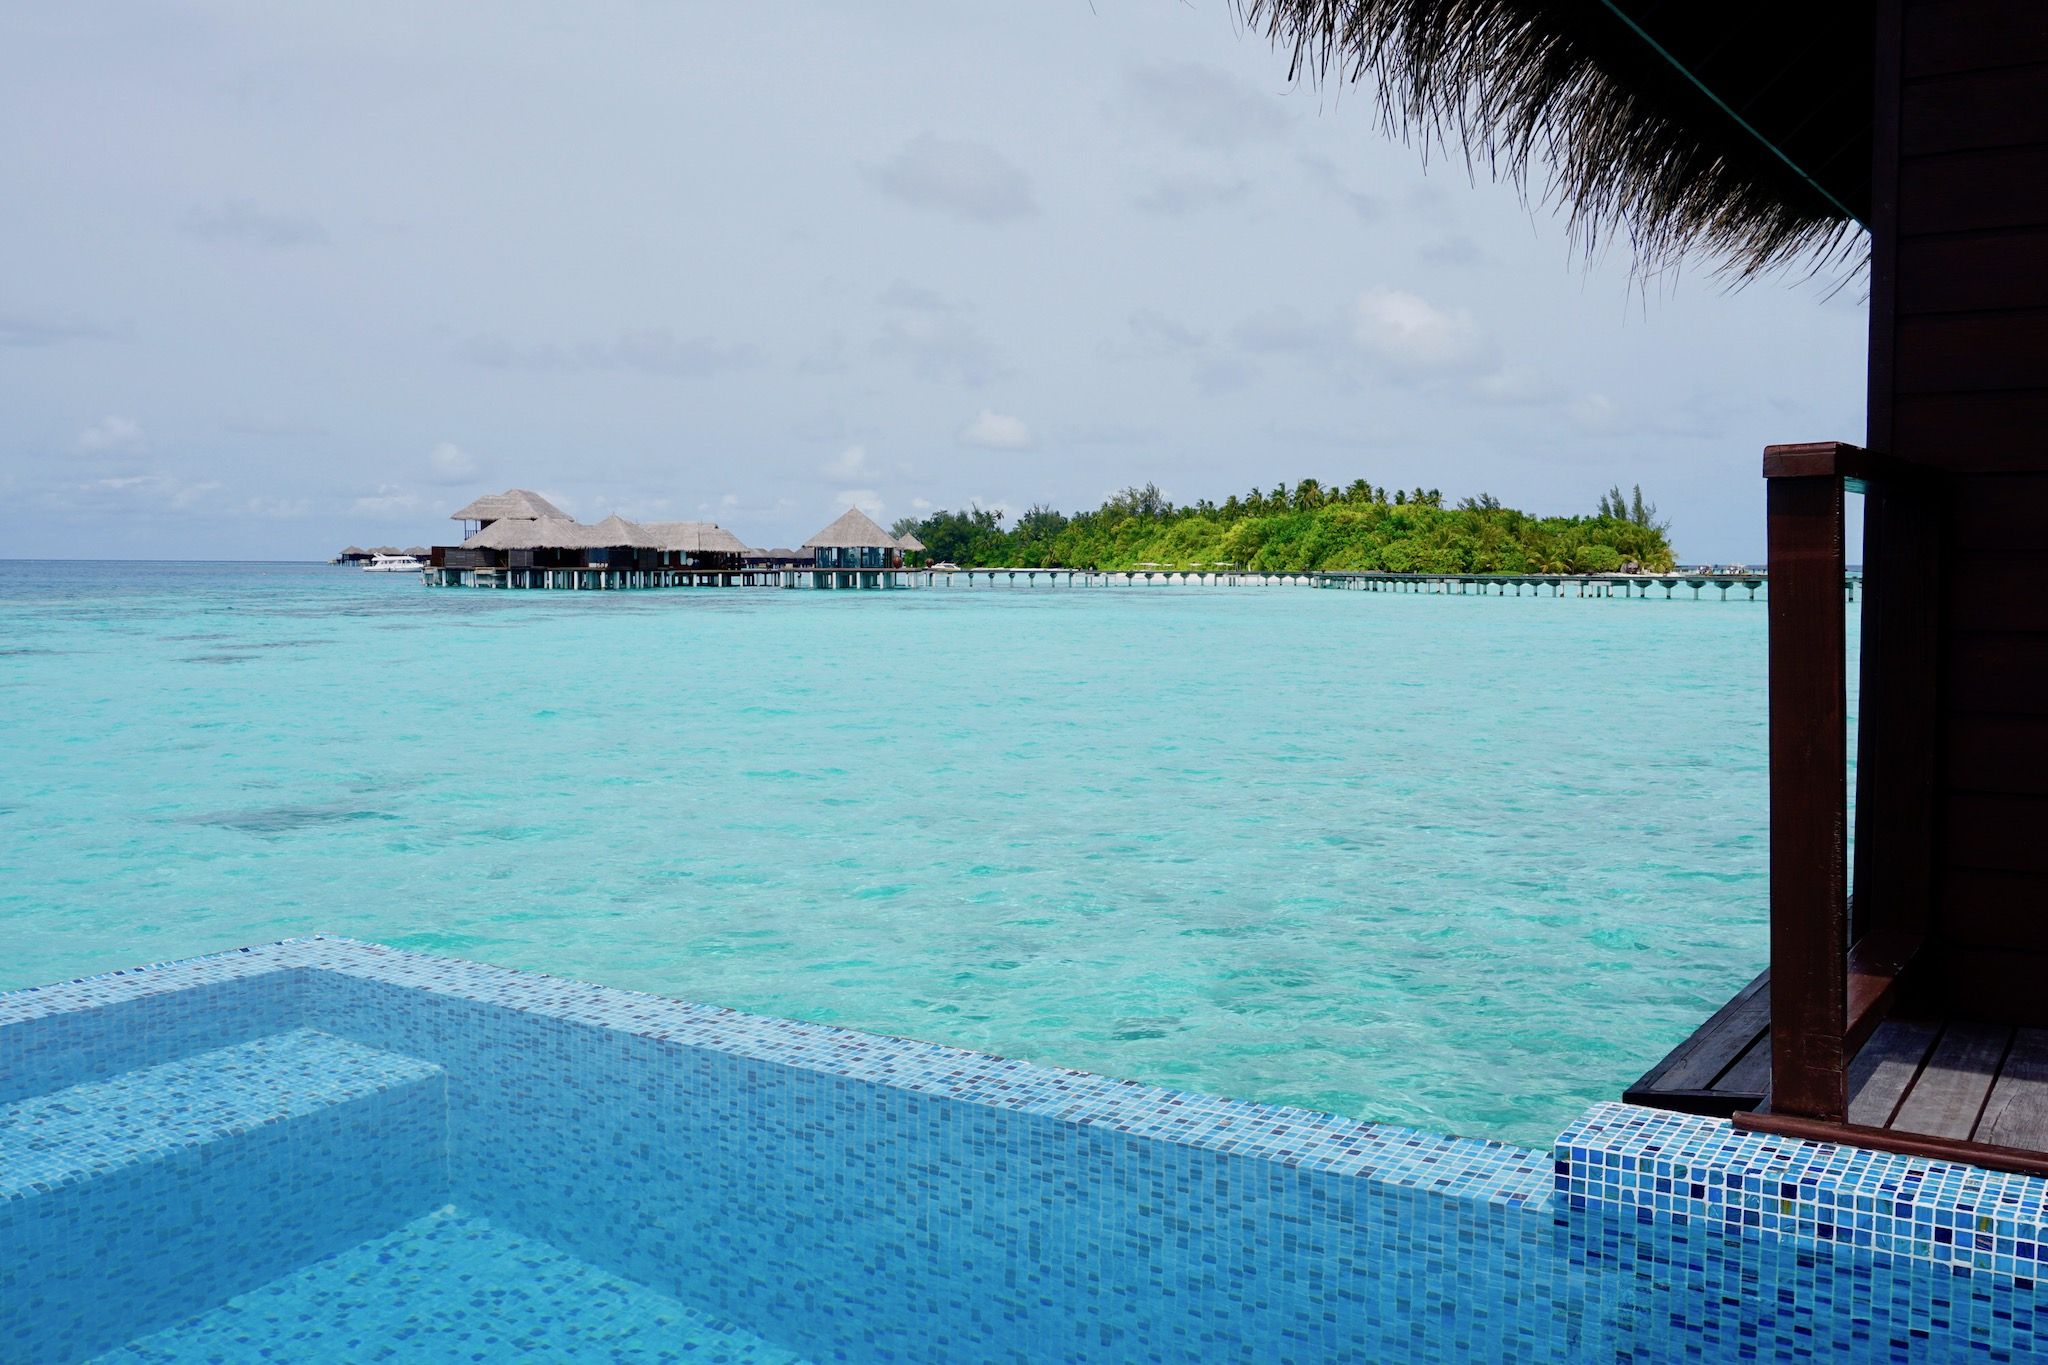 Die eigene Wanderlust kann man auch ganz wunderbar beim Relaxen auf einer Malediven-Insel ausleben. Foto: Sascha Tegtmeyer